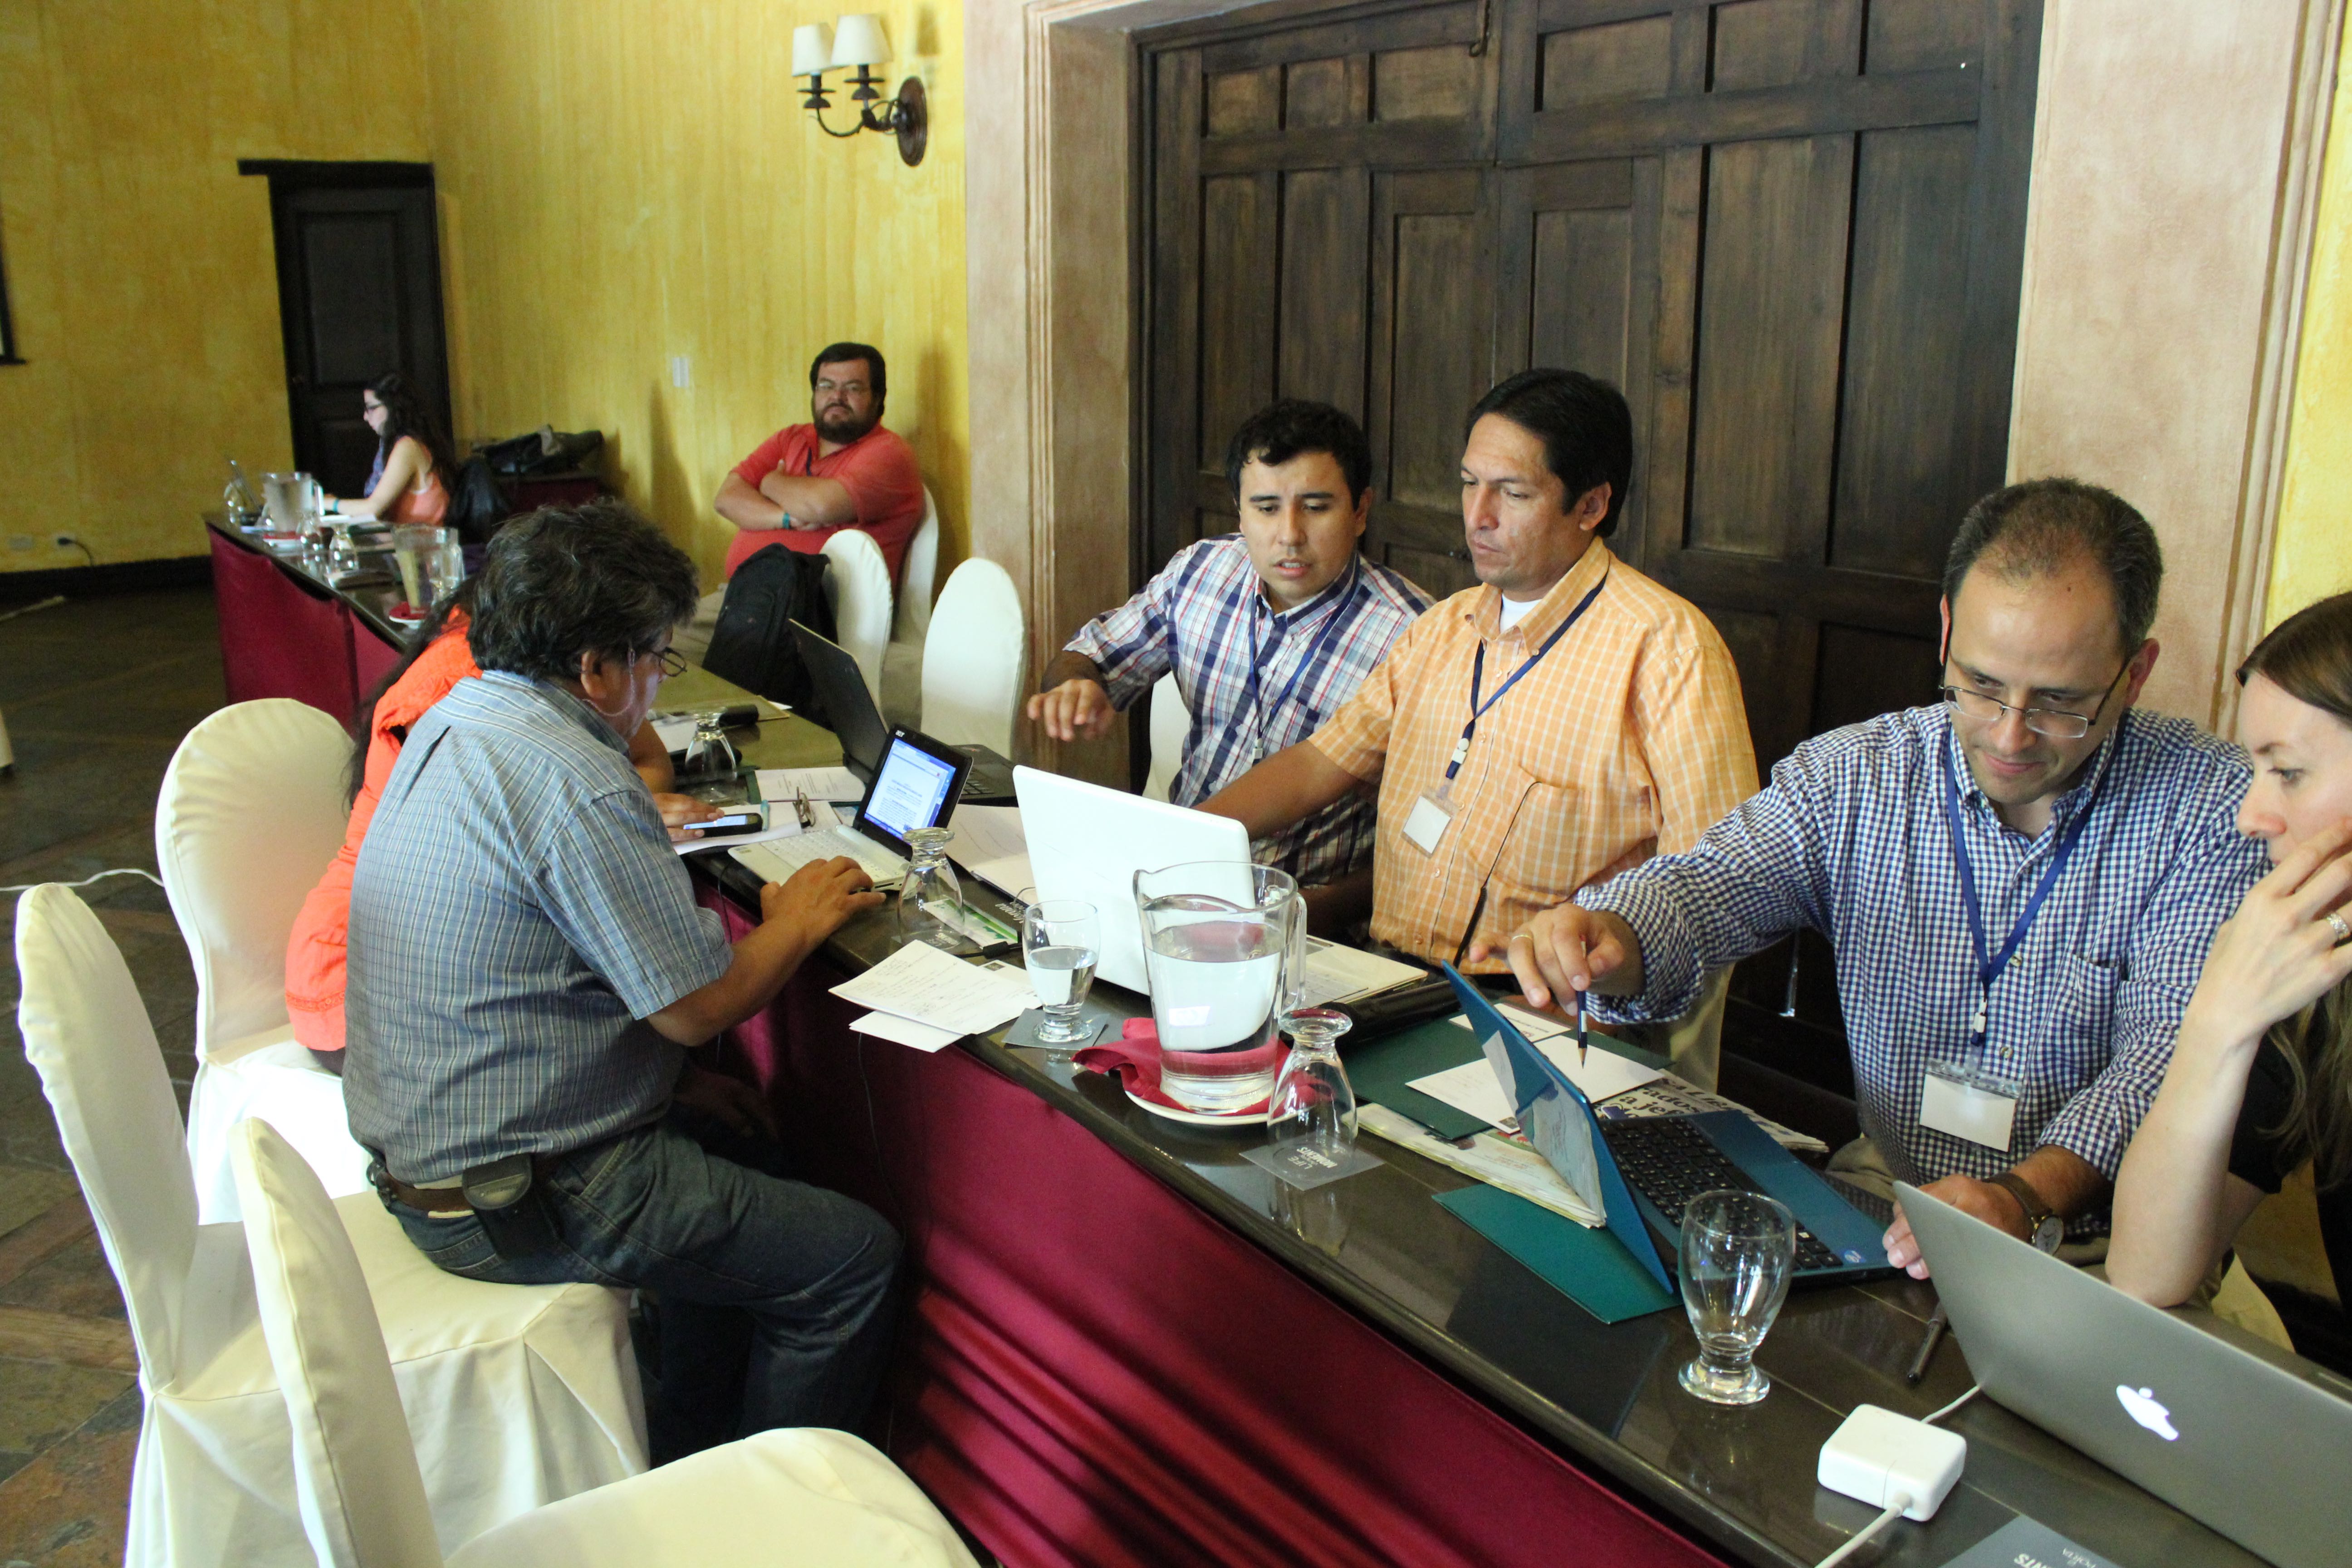 Gruppen fra Bolivia analyserer kontrakter under Modul 2 av TRACE. Raul Velasques til høyre i bildet. Foto: Christine Amdam